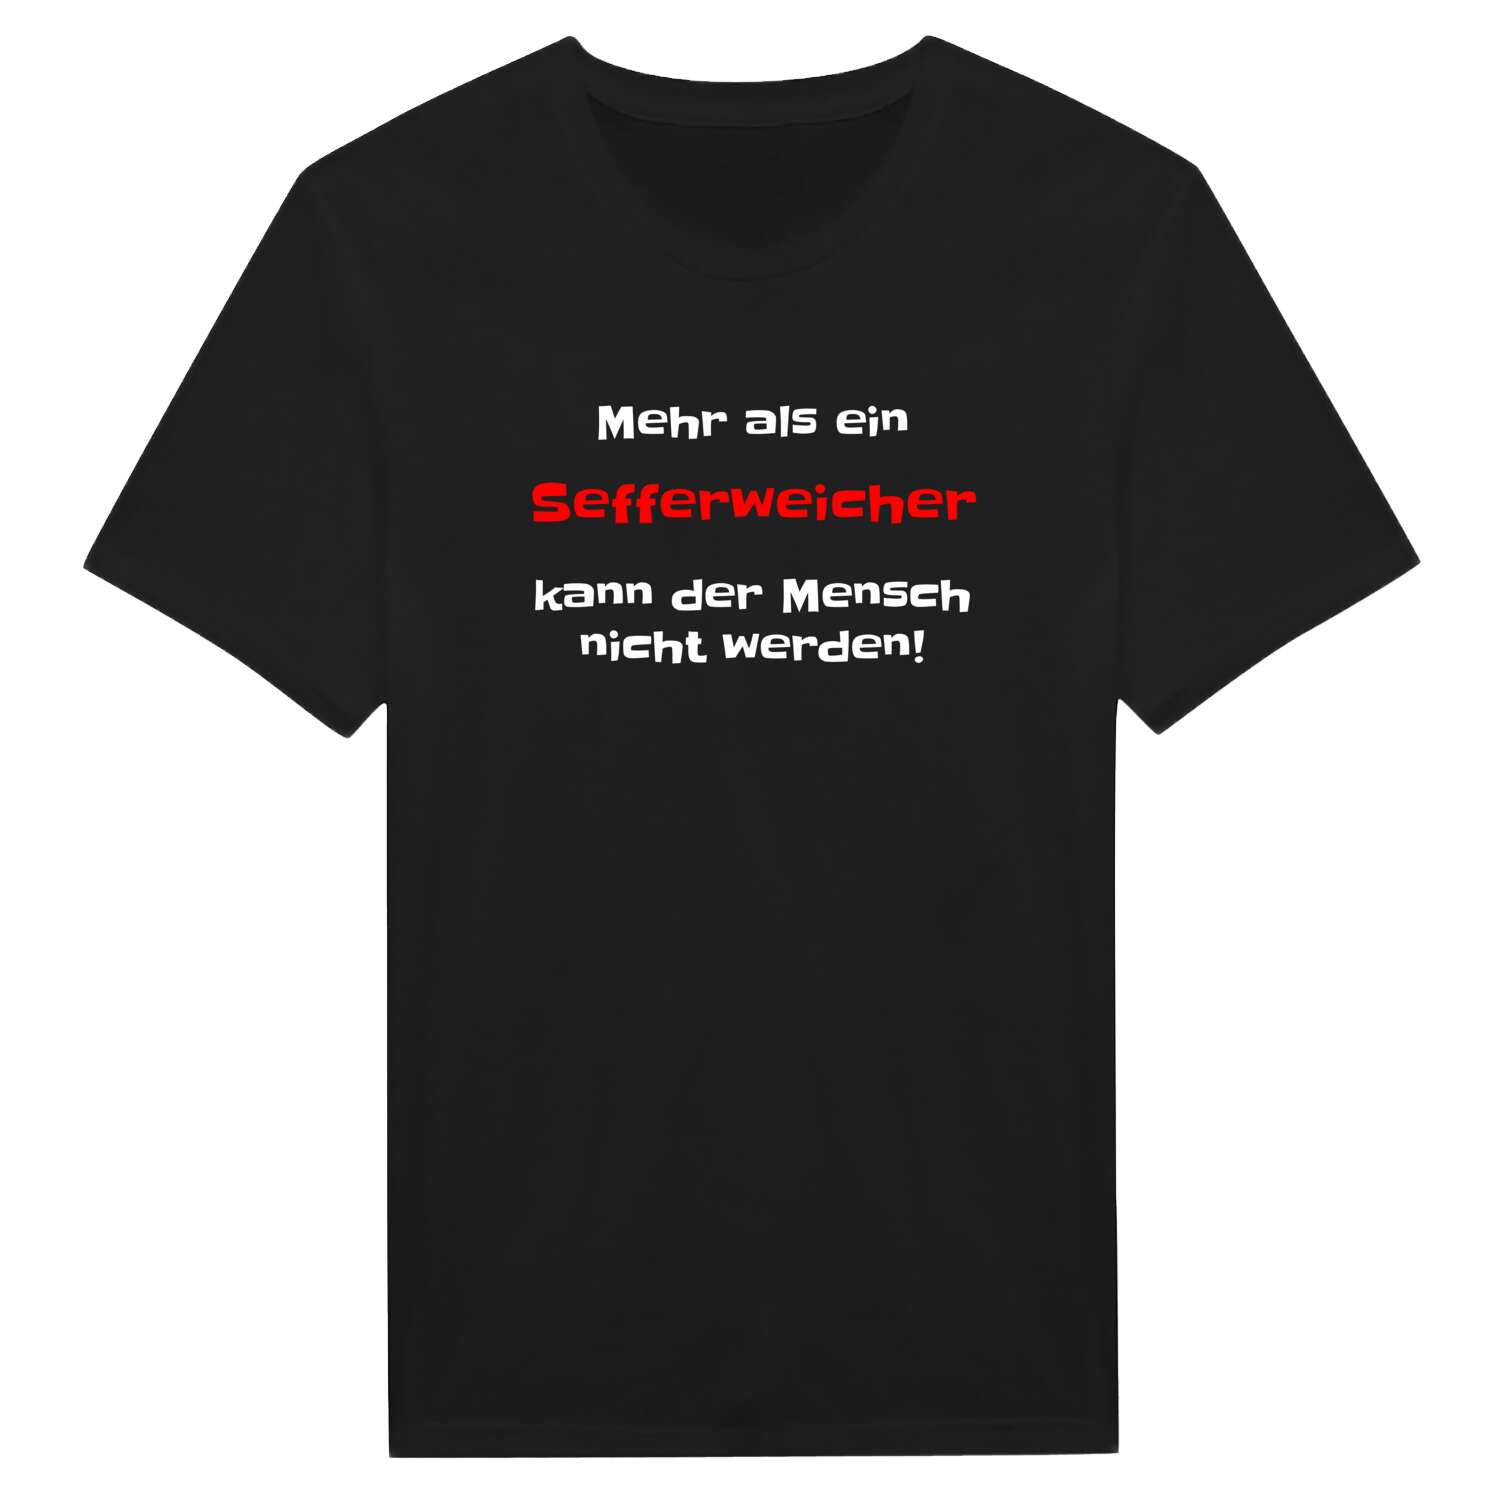 Sefferweich T-Shirt »Mehr als ein«